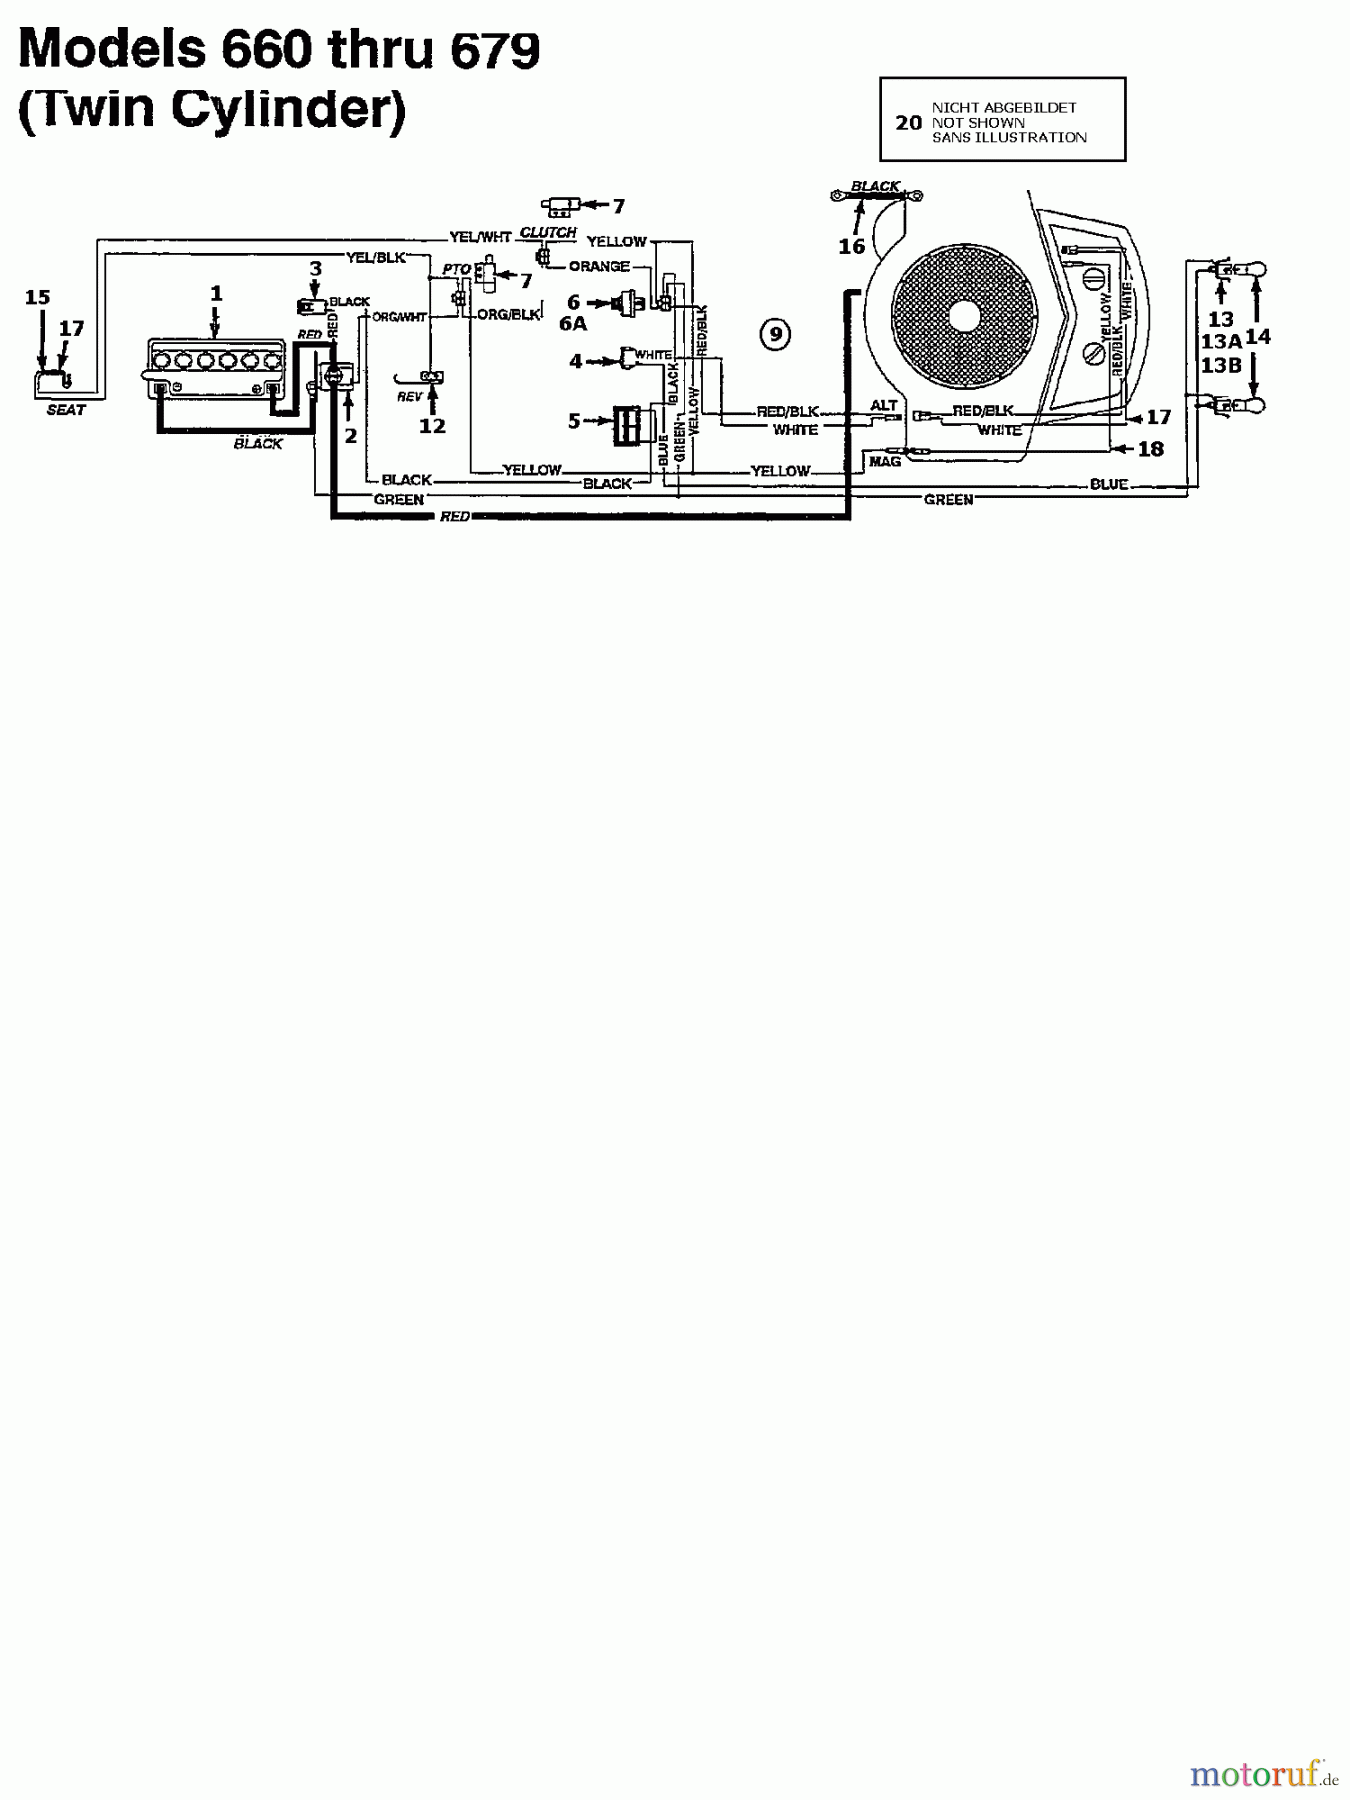  Brill Tracteurs de pelouse 76/13 135N677C629  (1995) Plan électrique 2 cylindre